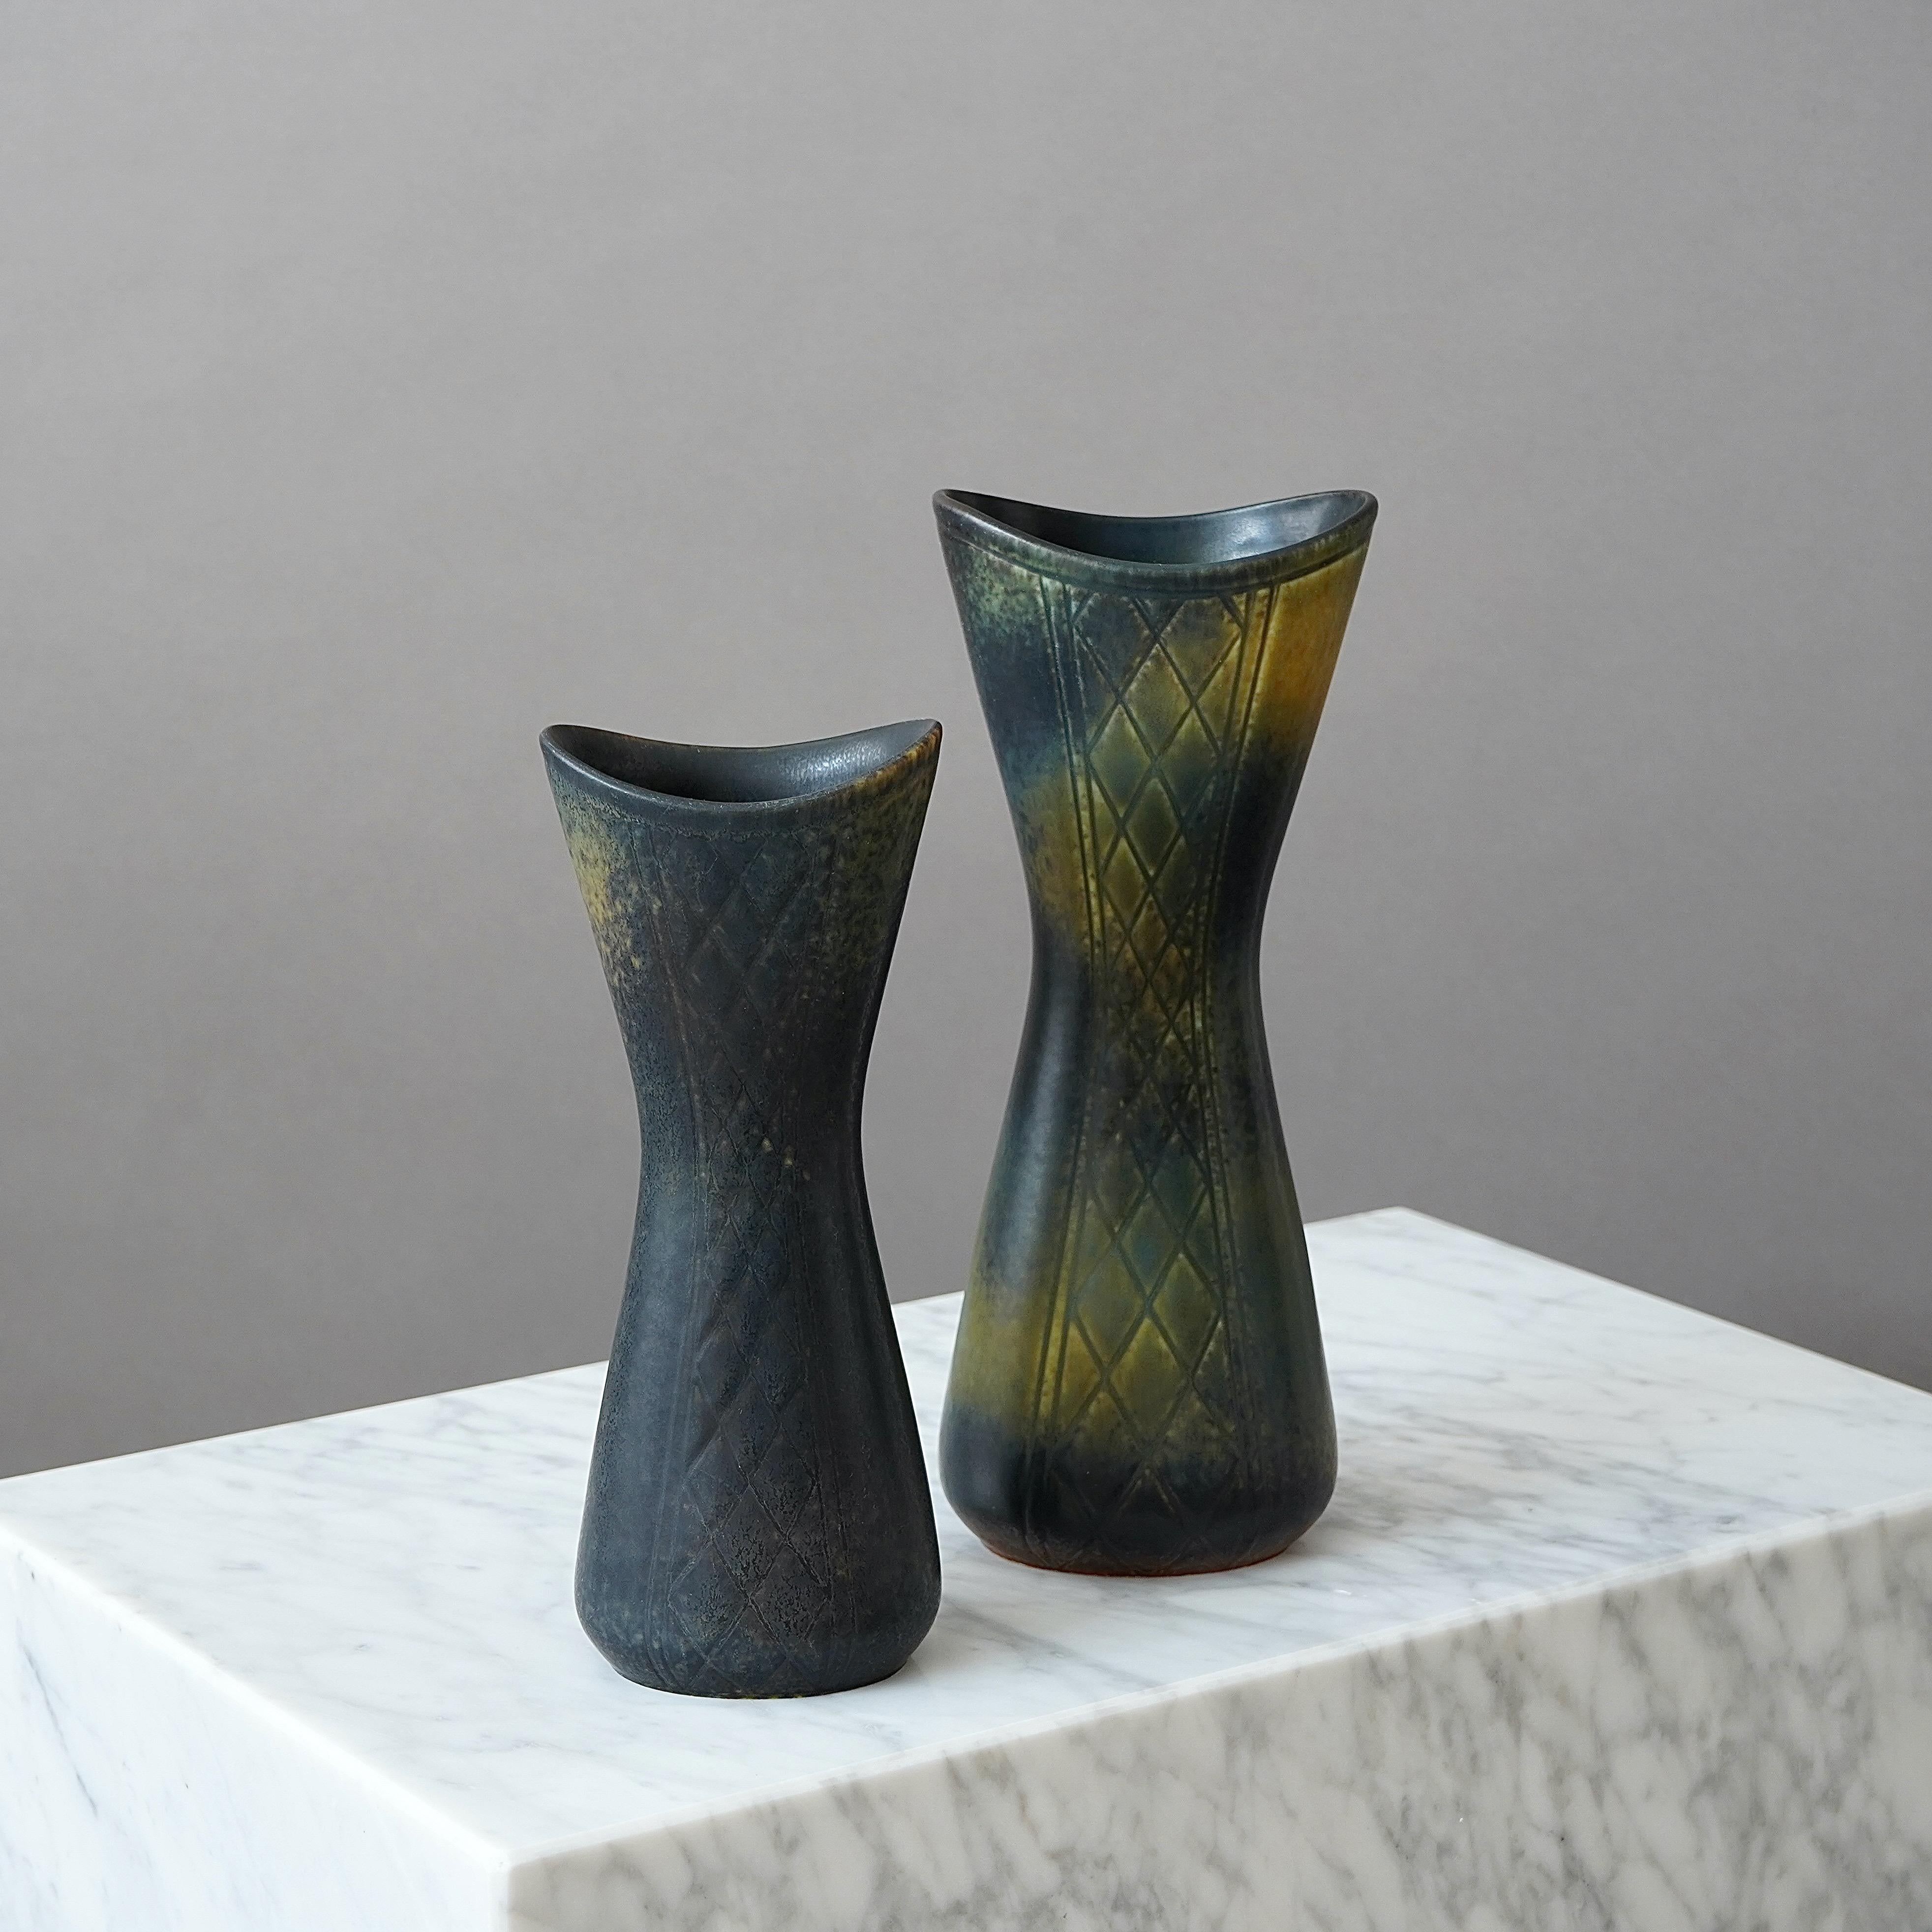 Ein Paar schöne Steinzeugvasen mit erstaunlicher Glasur und unterschiedlichen Ritzmustern auf jeder Seite.
Entworfen von Gunnar Nylund für Rorstrand, Schweden, 1950er Jahre.  

Ausgezeichneter Zustand. Eingeschnittene Signatur 